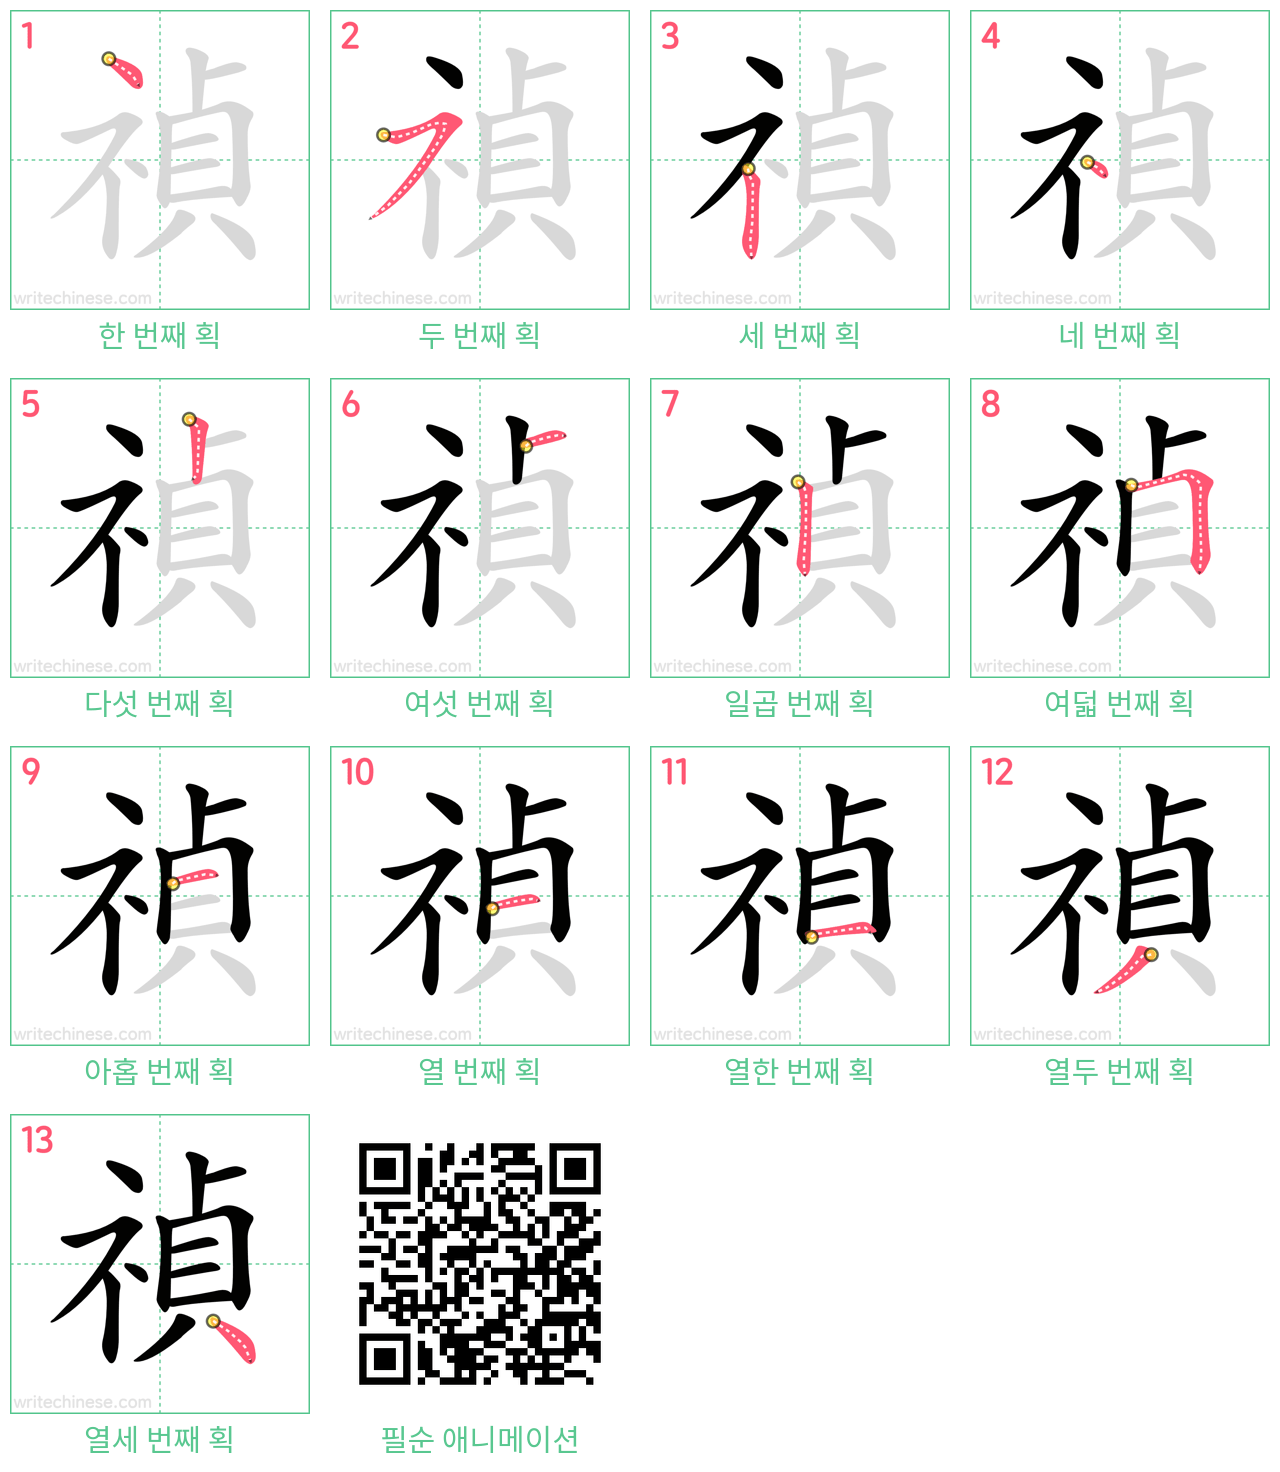 禎 step-by-step stroke order diagrams